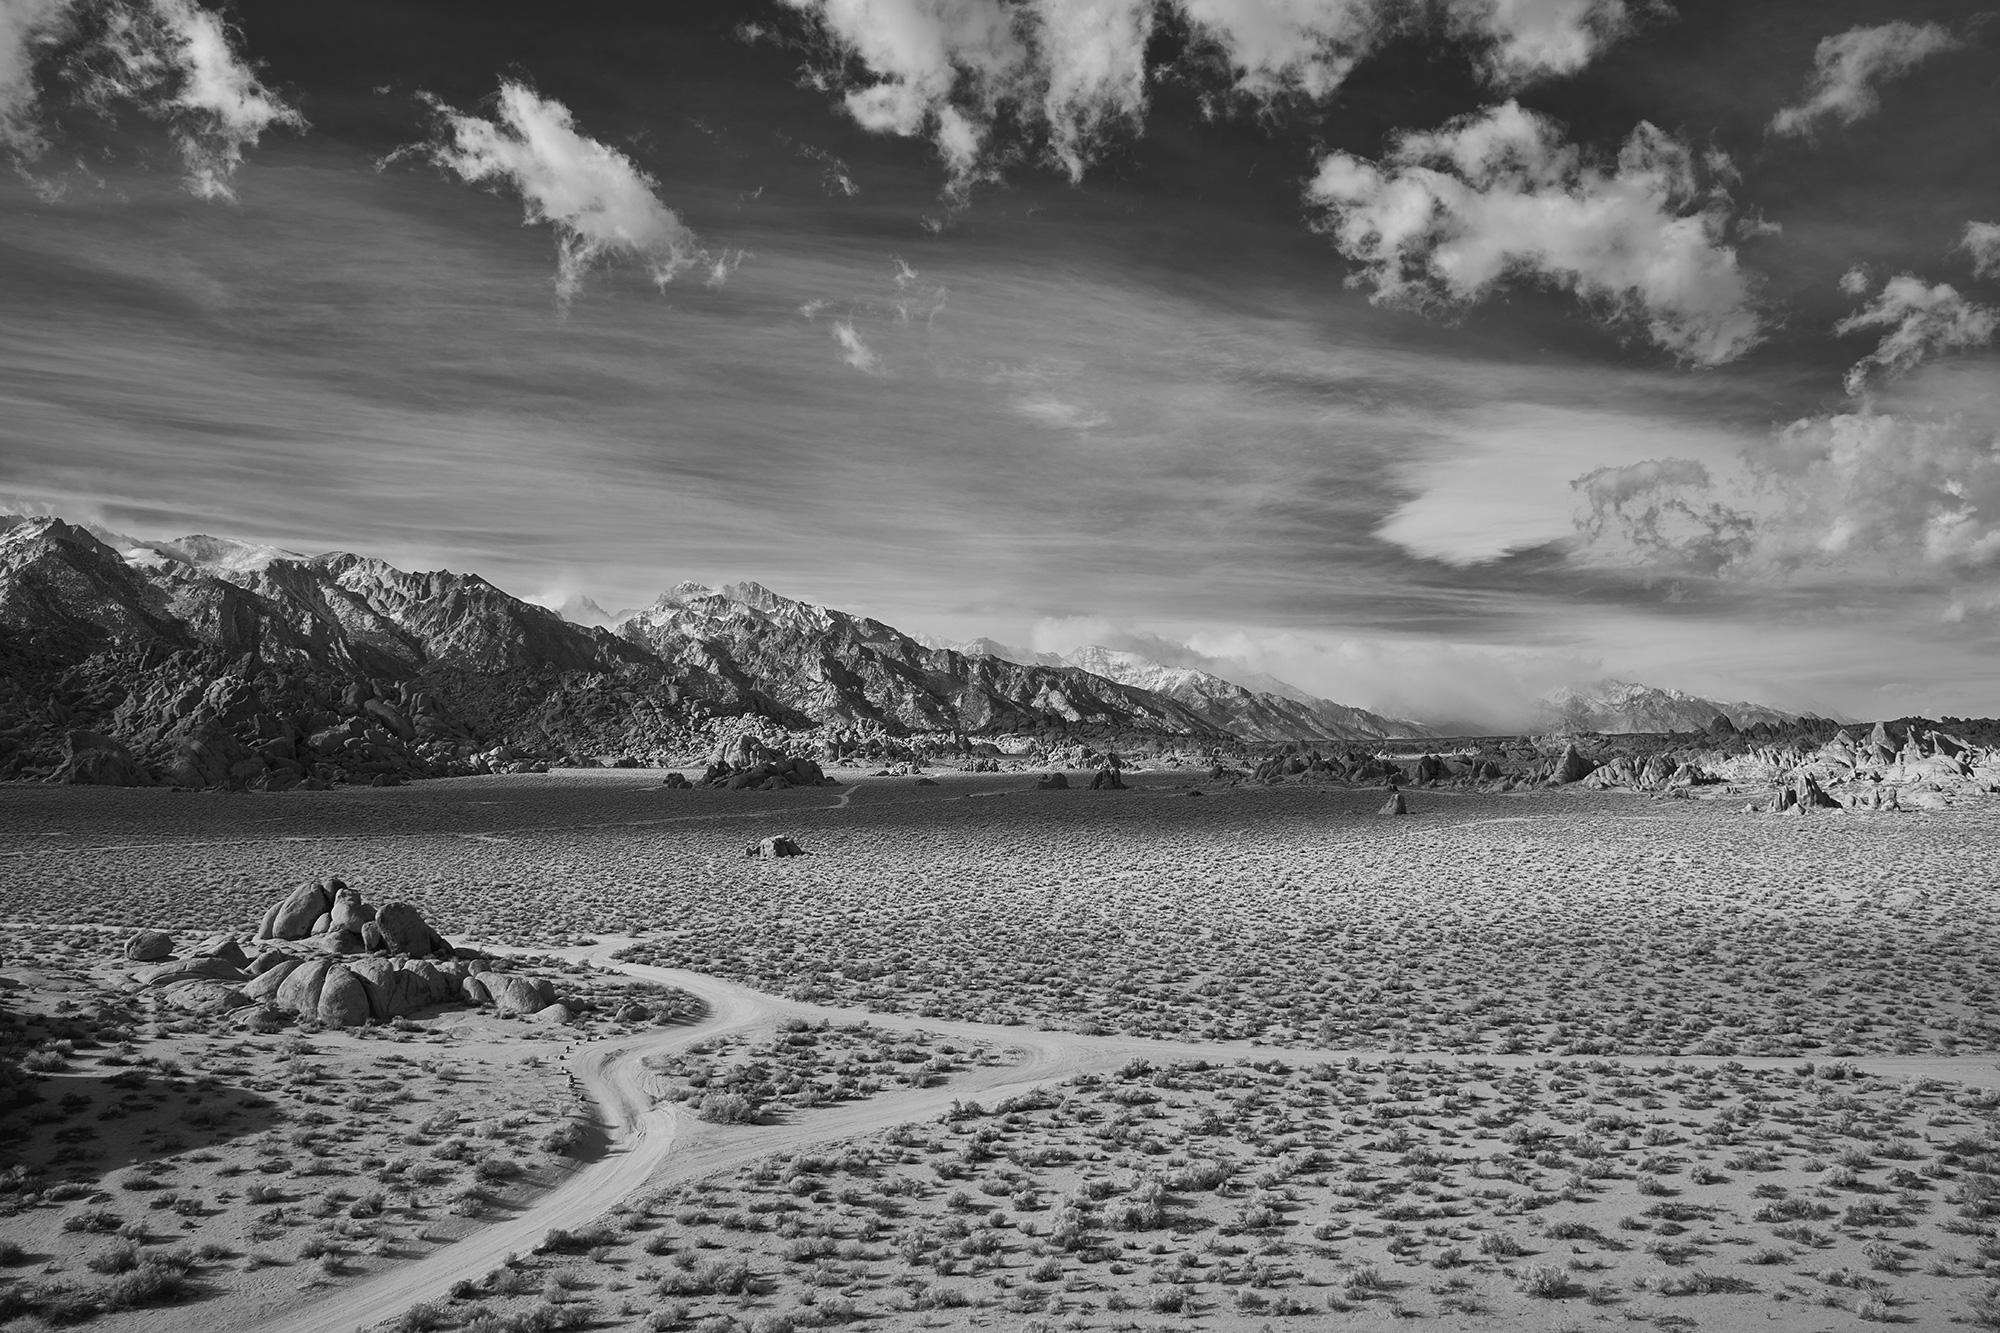 Crossing du désert - photographie à grande échelle d'un paysage désertique spectaculaire - Photograph de Frank Schott